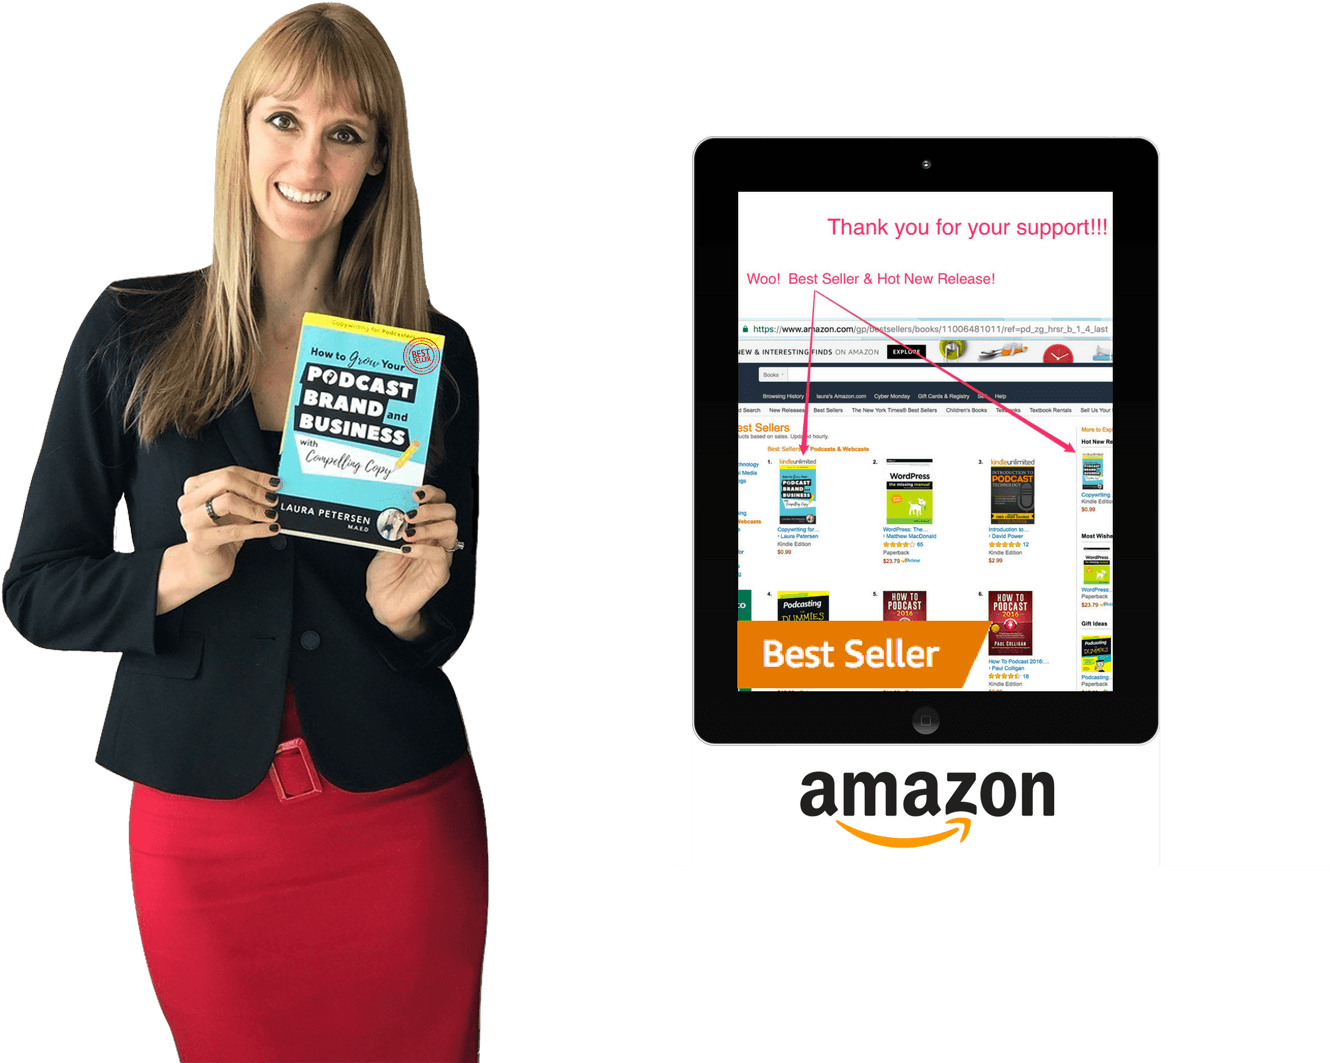 Amazon Bestseller Laptop Laura Petersen Best Selling - Online Advertising (1426x1080), Png Download